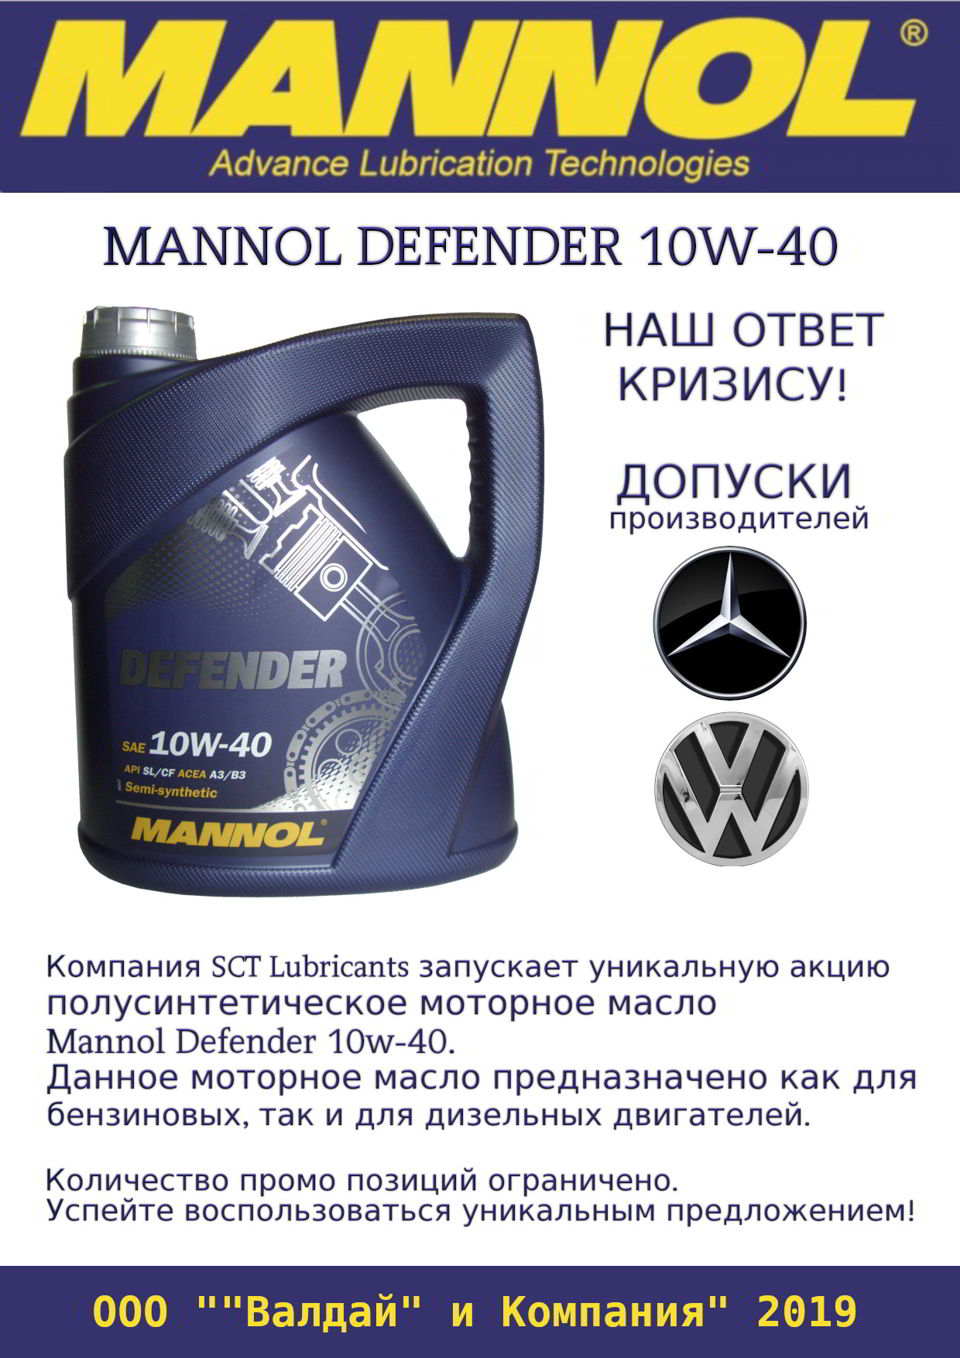 Mannol Defender 10w-40